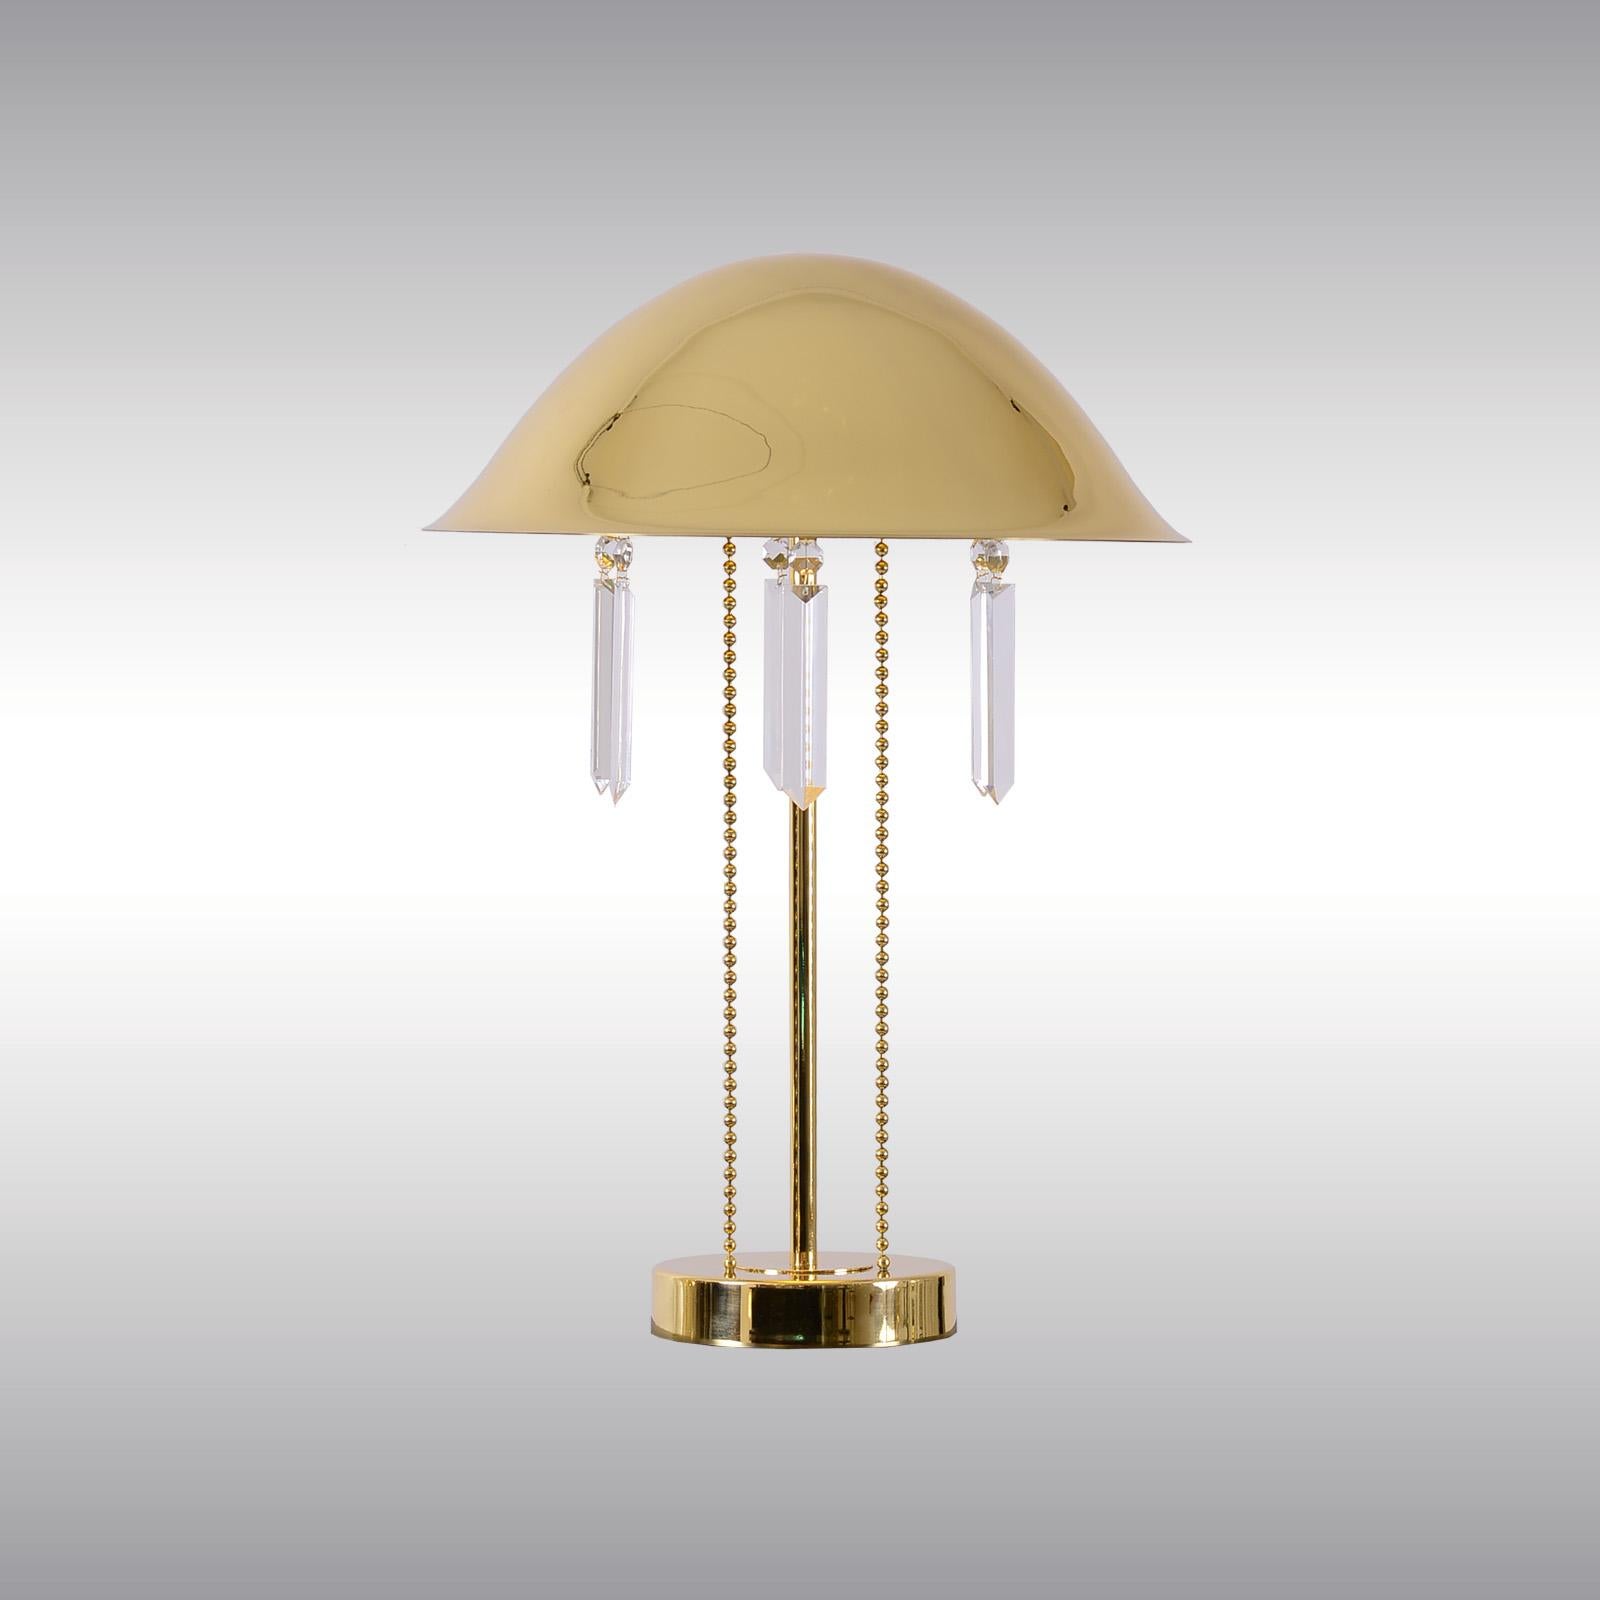 Cette lampe de table est parfaitement assortie à la célèbre lampe pendante de la salle à manger et du hall d'entrée du sanatorium de Purkersdorf, conçue par Josef Hoffmann en 1903.

La plupart des composants sont conformes aux réglementations UL.